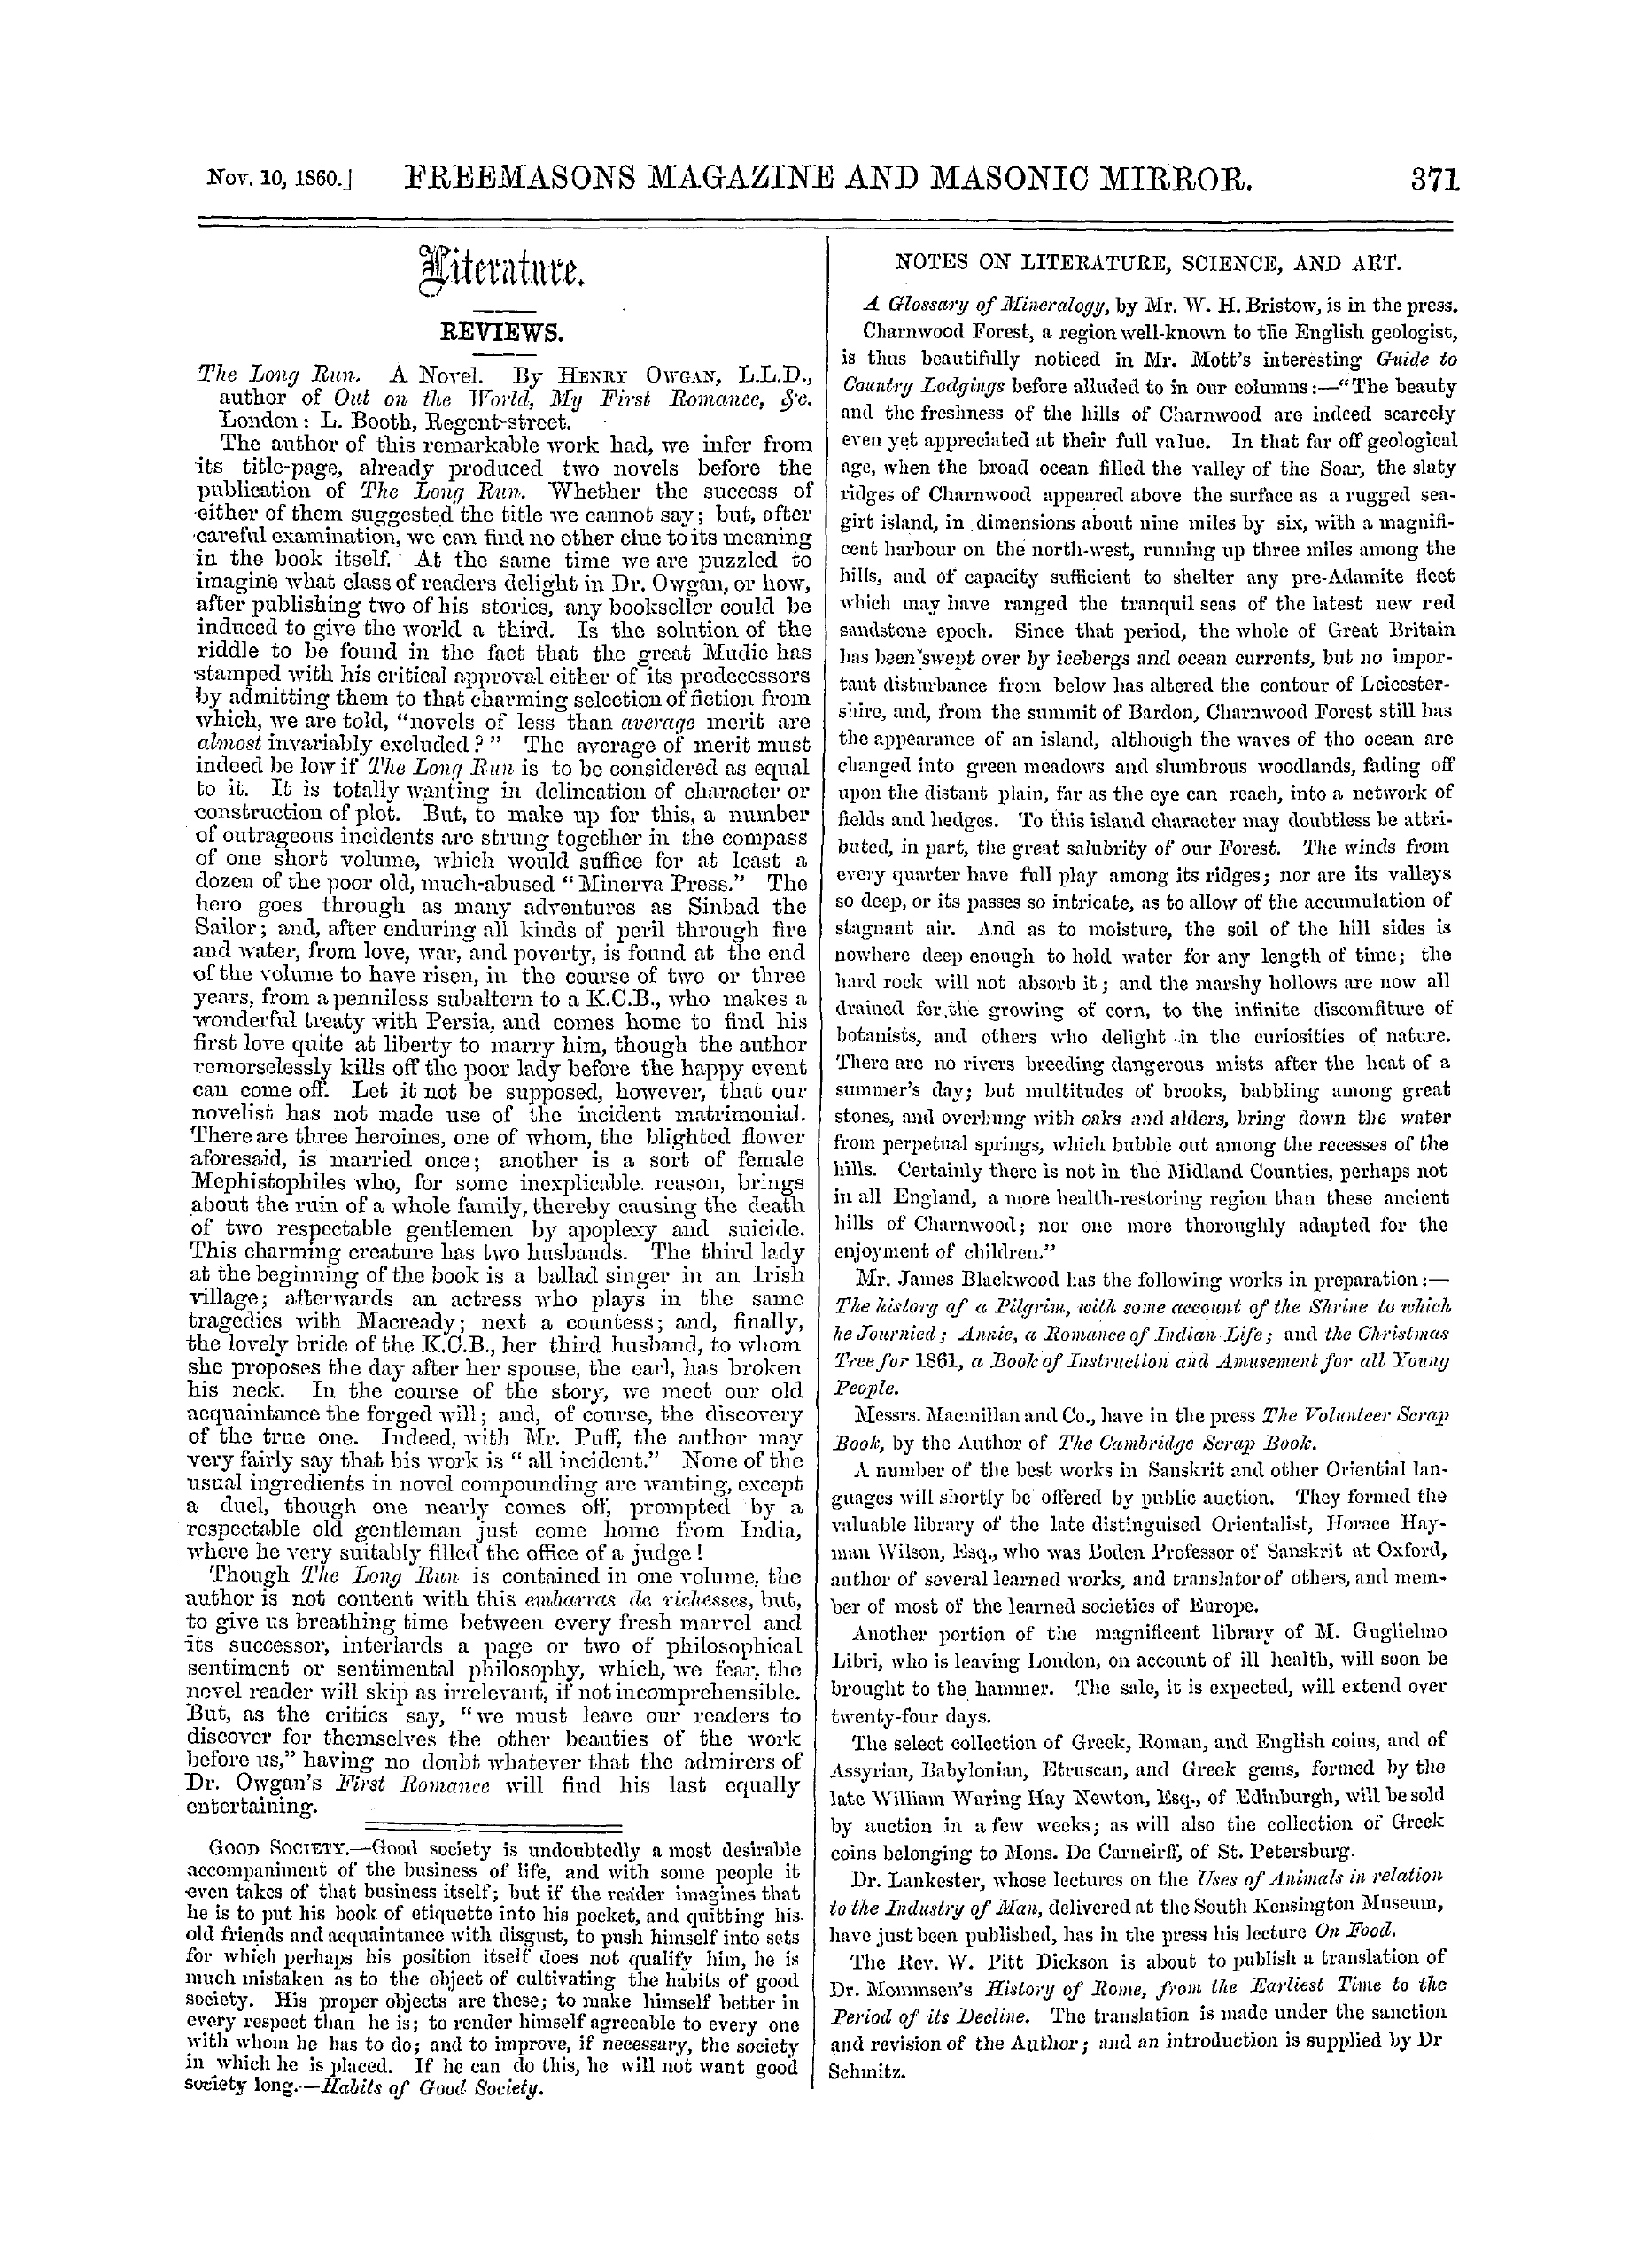 The Freemasons' Monthly Magazine: 1860-11-10: 11